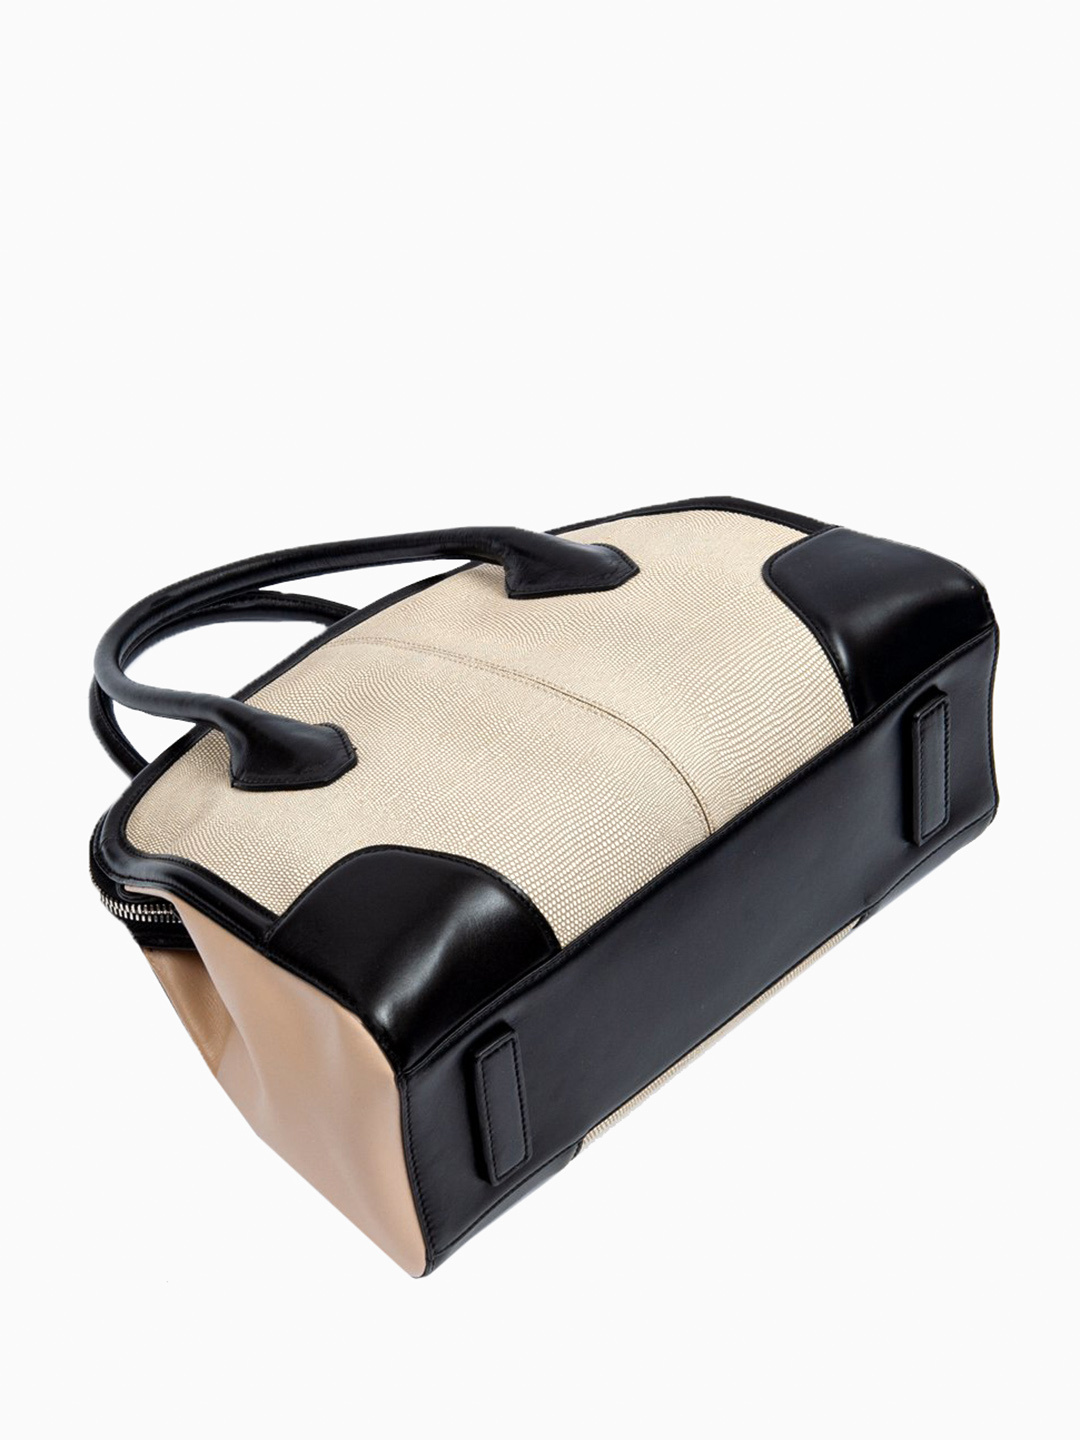 Фото Оригинальная женская сумка-тоут из натуральной кожи с выделкой под кожу ската Классические сумки